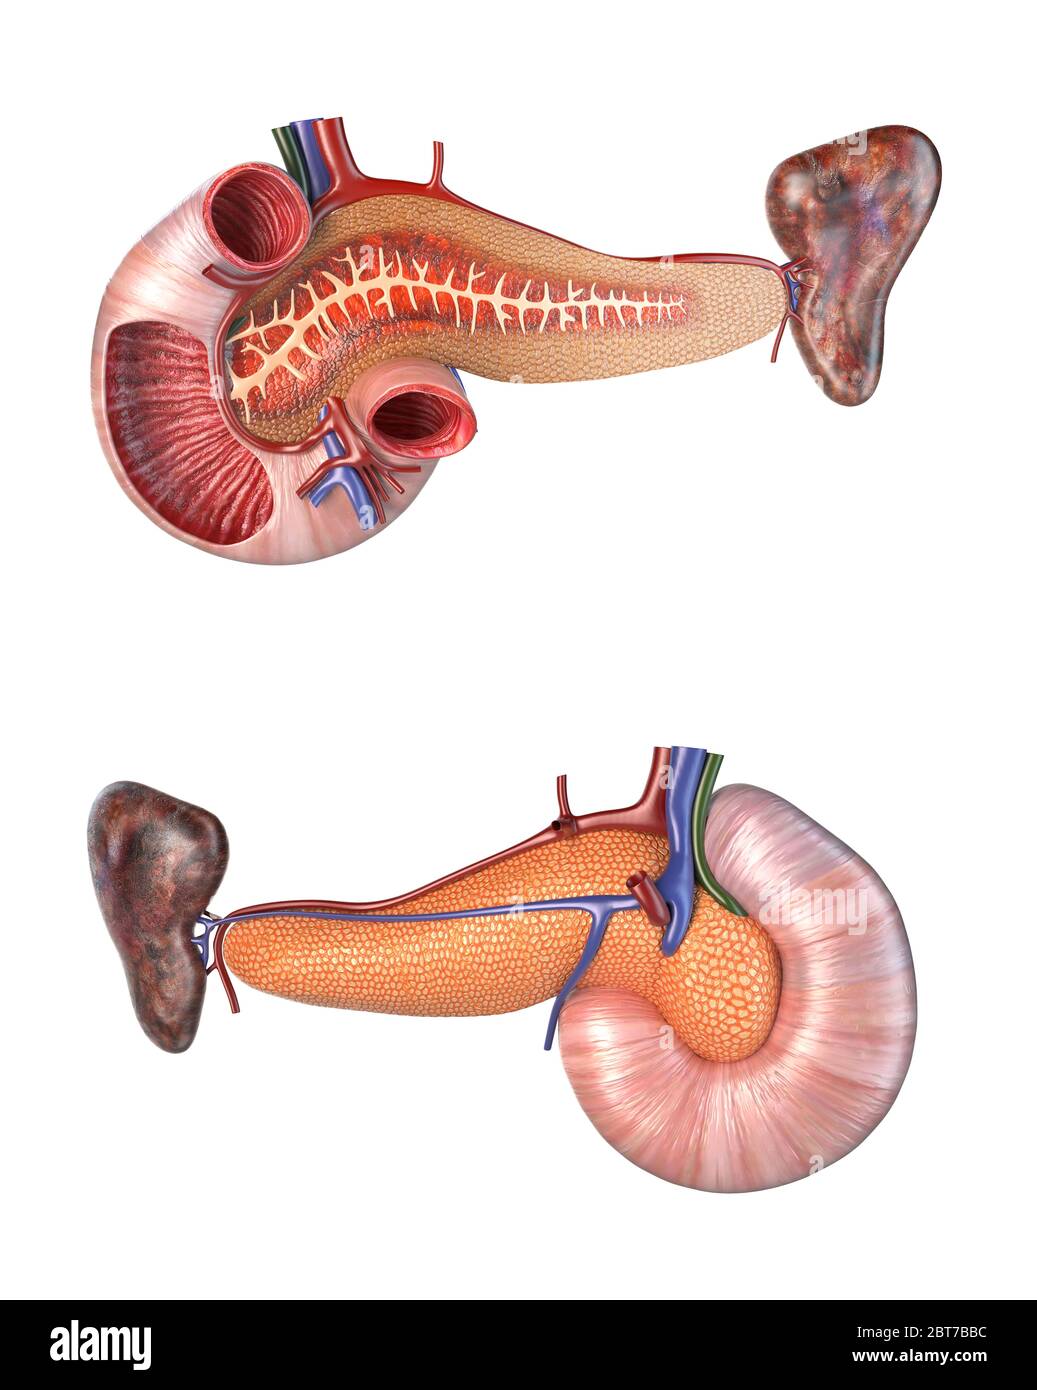 Anatomie menschlicher Pankreas und Duodenum Querschnitt. Vorder- und Rückansicht. 3d-Illustration auf weißem Hintergrund. Stockfoto